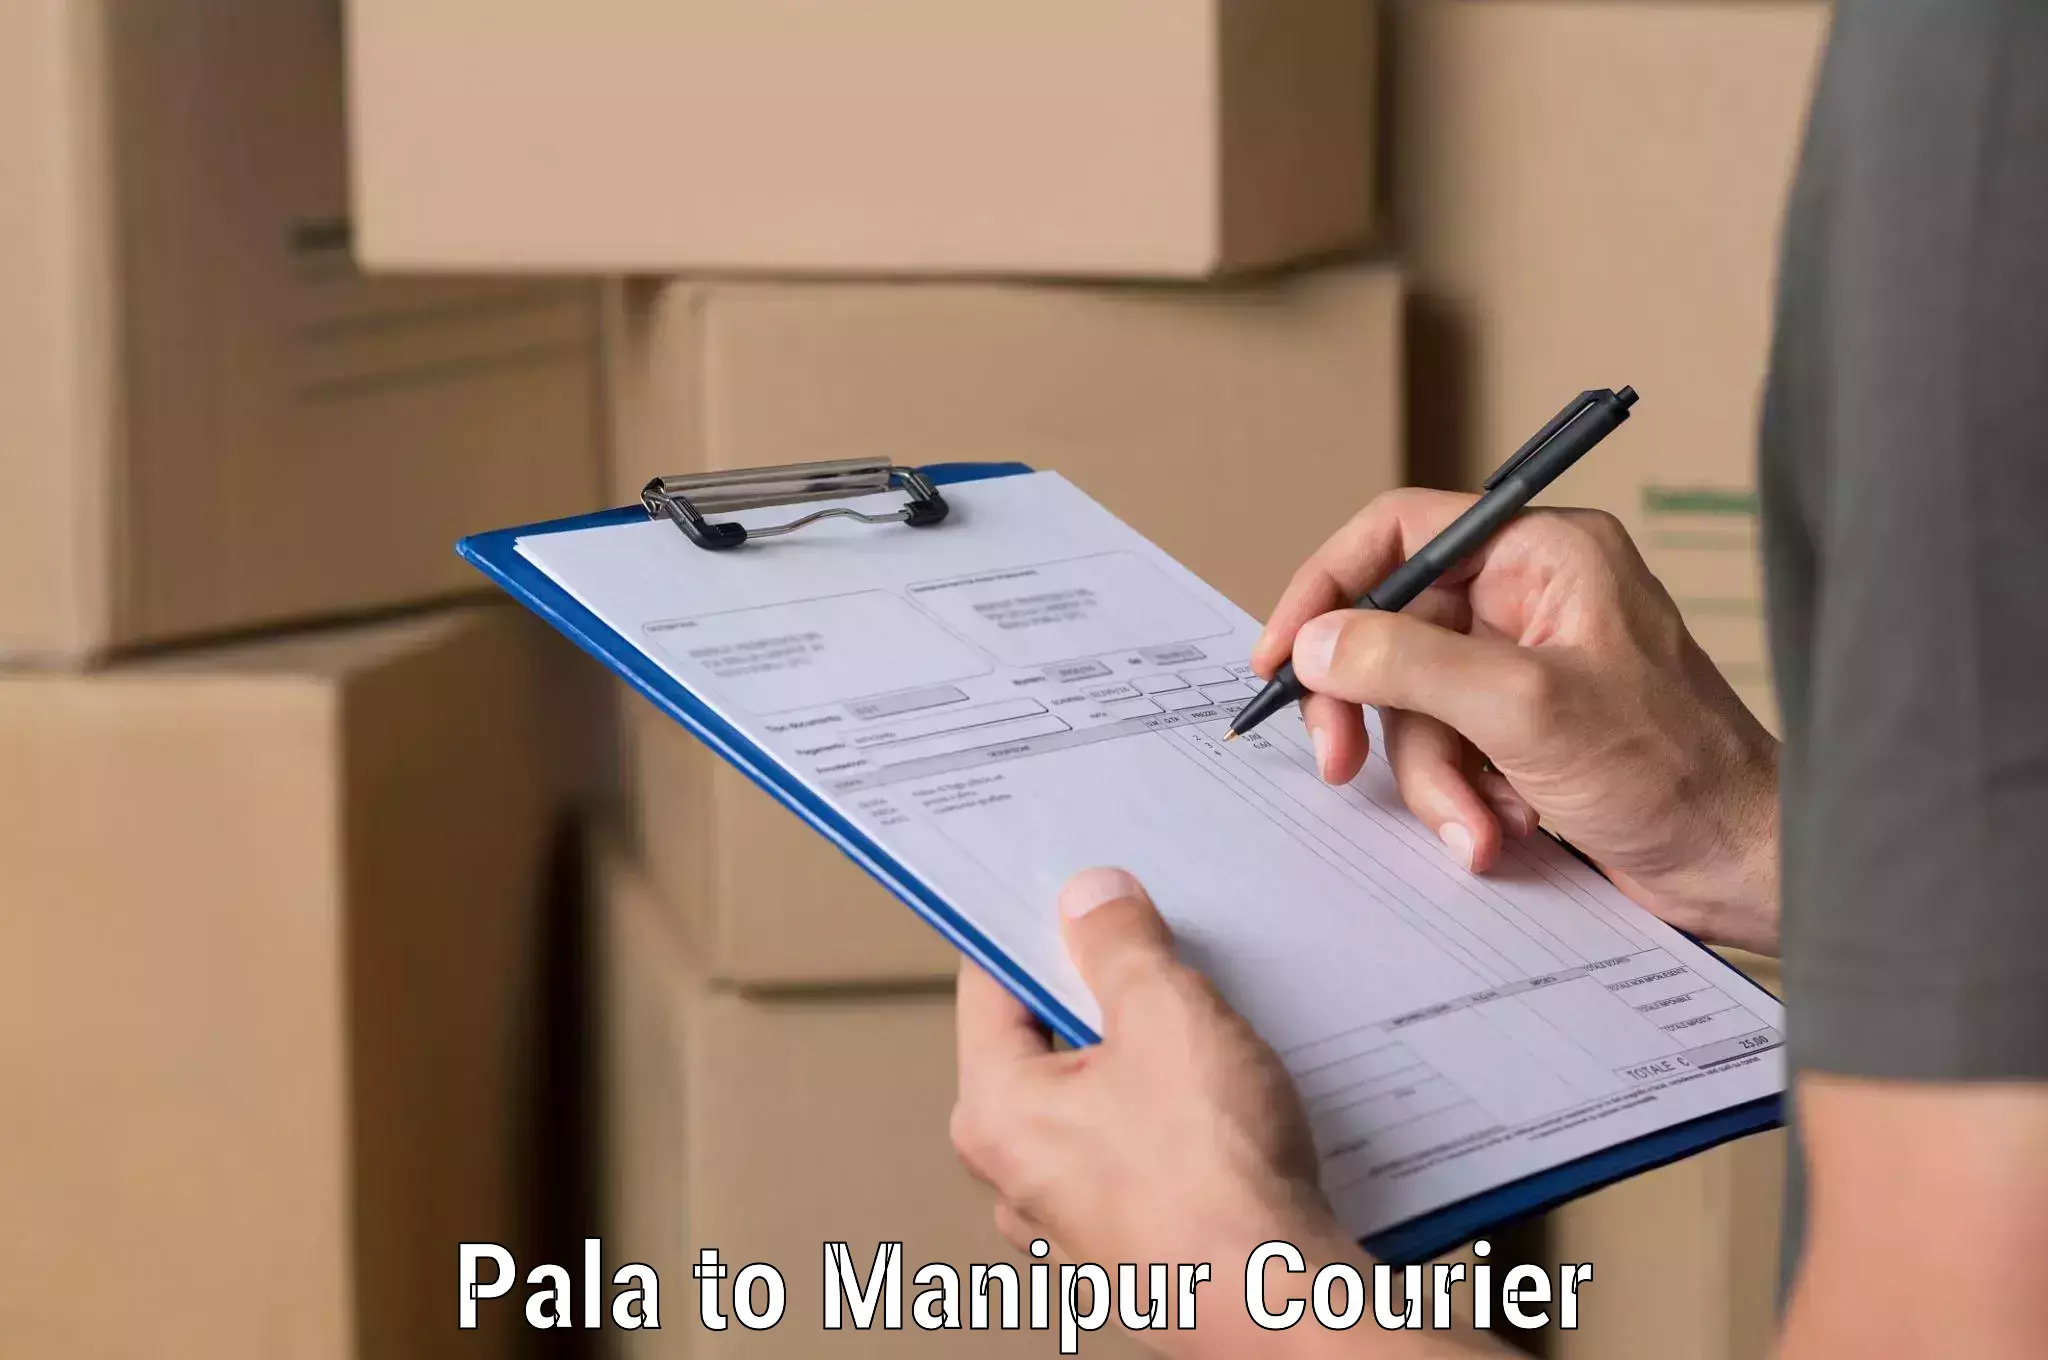 Affordable parcel service Pala to Ukhrul